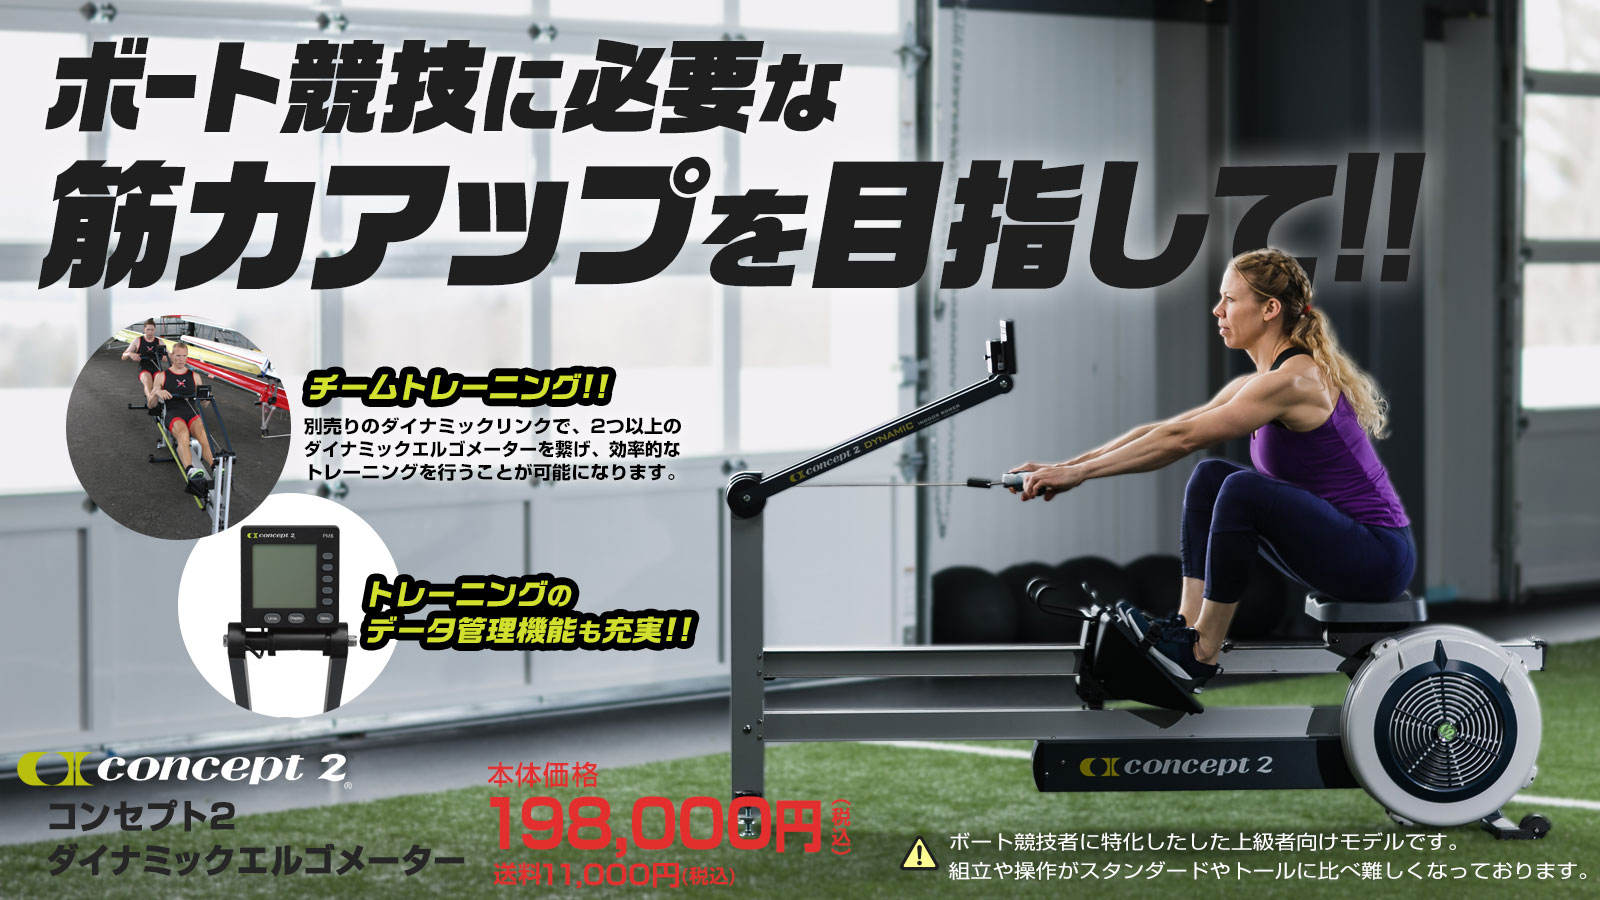 concept2 ローイングエルゴメーター トレーニング用品 トレーニング/エクササイズ スポーツ・レジャー 店舗 神戸